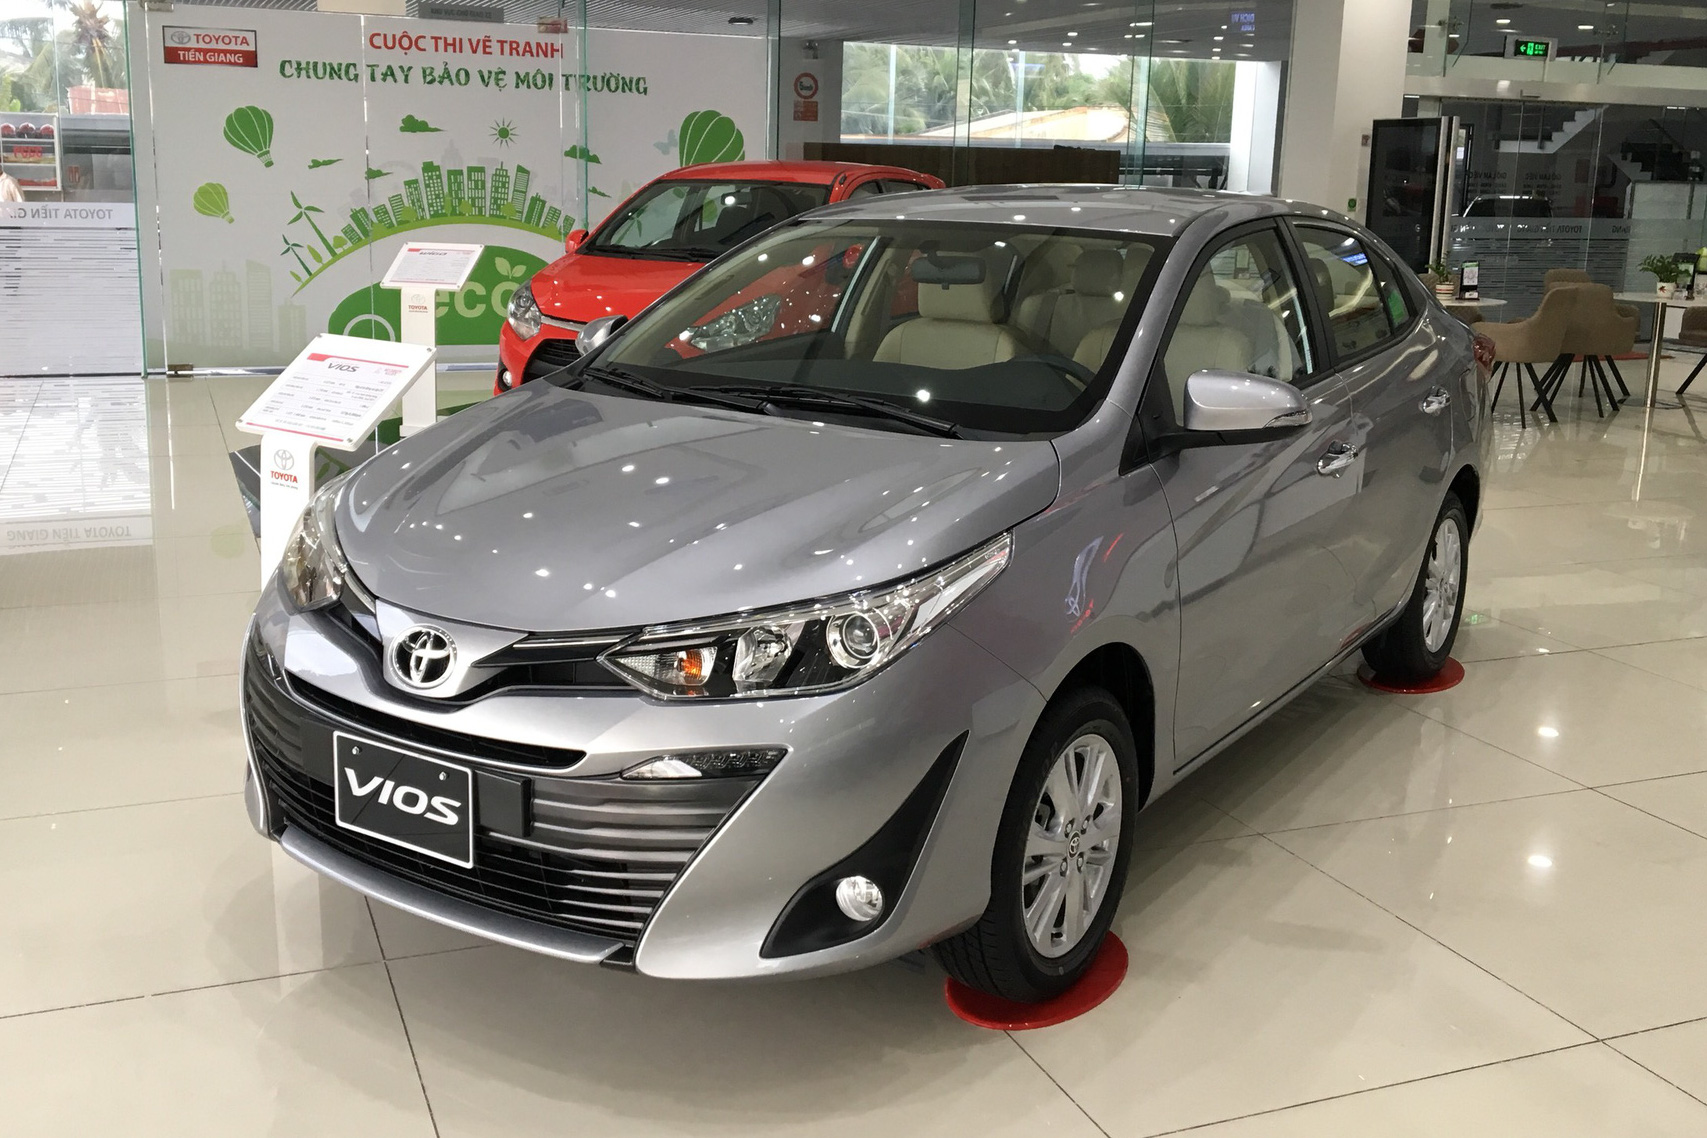 Mua bán xe Toyota Vios 2020 cũ mới giá tốt nhất toàn quốc 32023